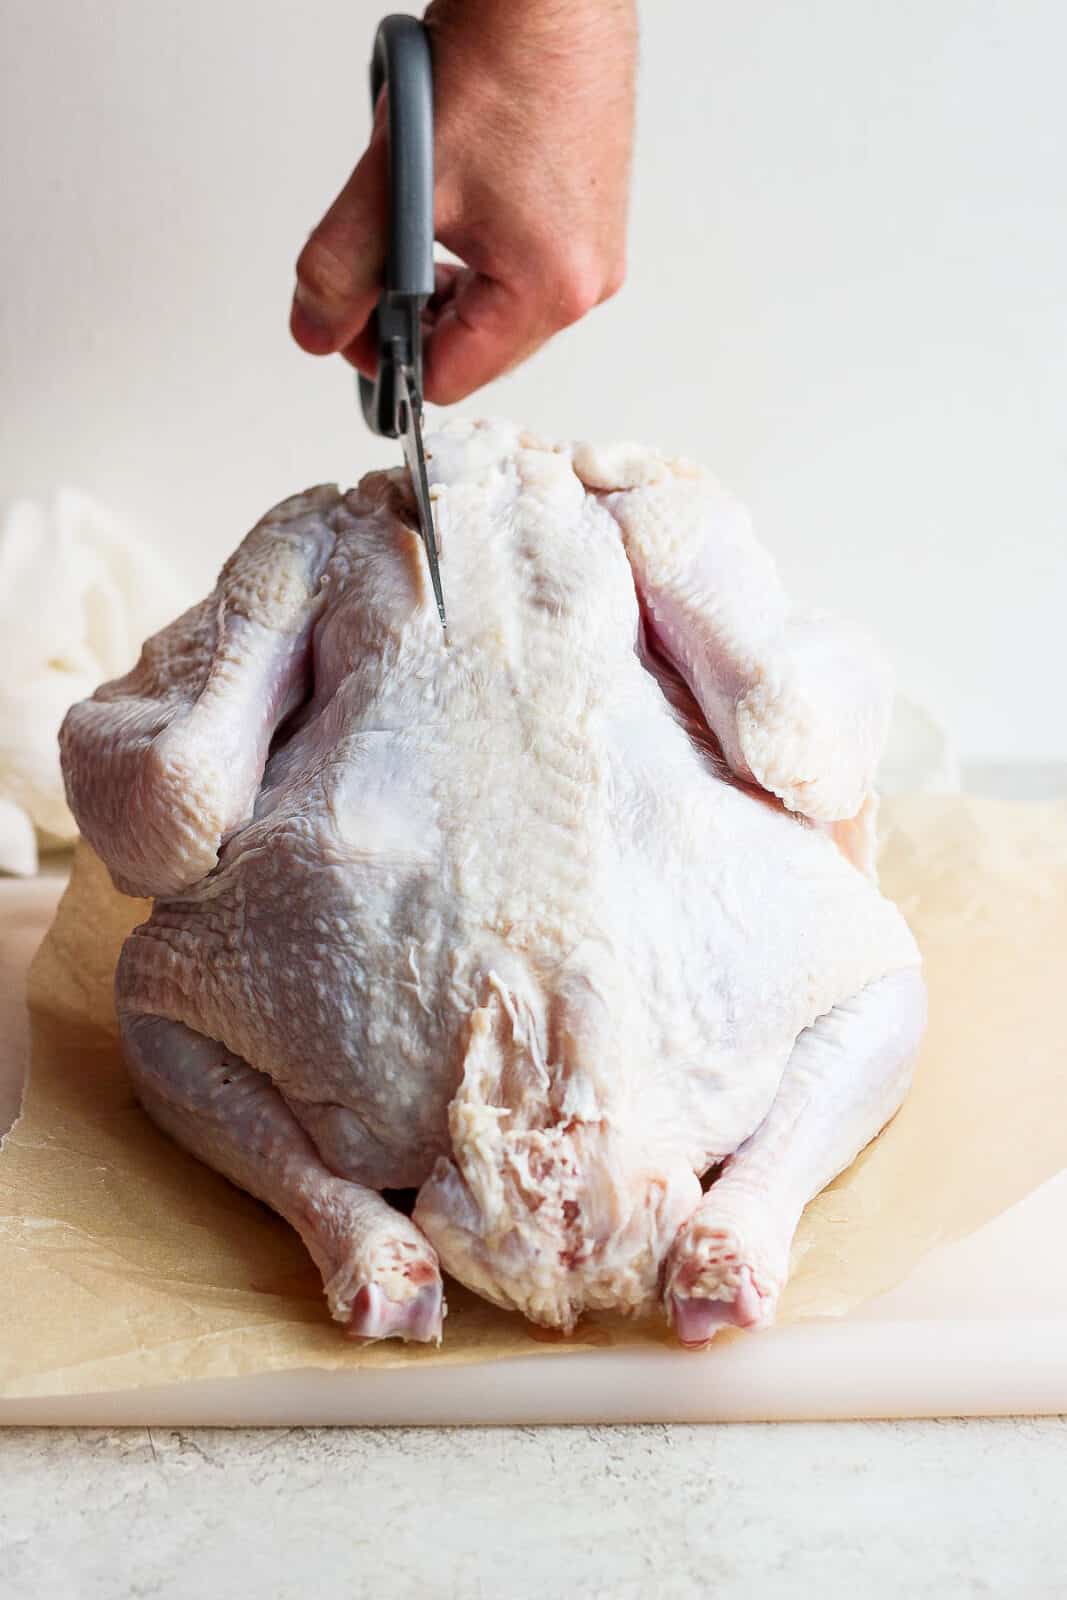 Sharp kitchen shears cutting into a whole turkey near the backbone.